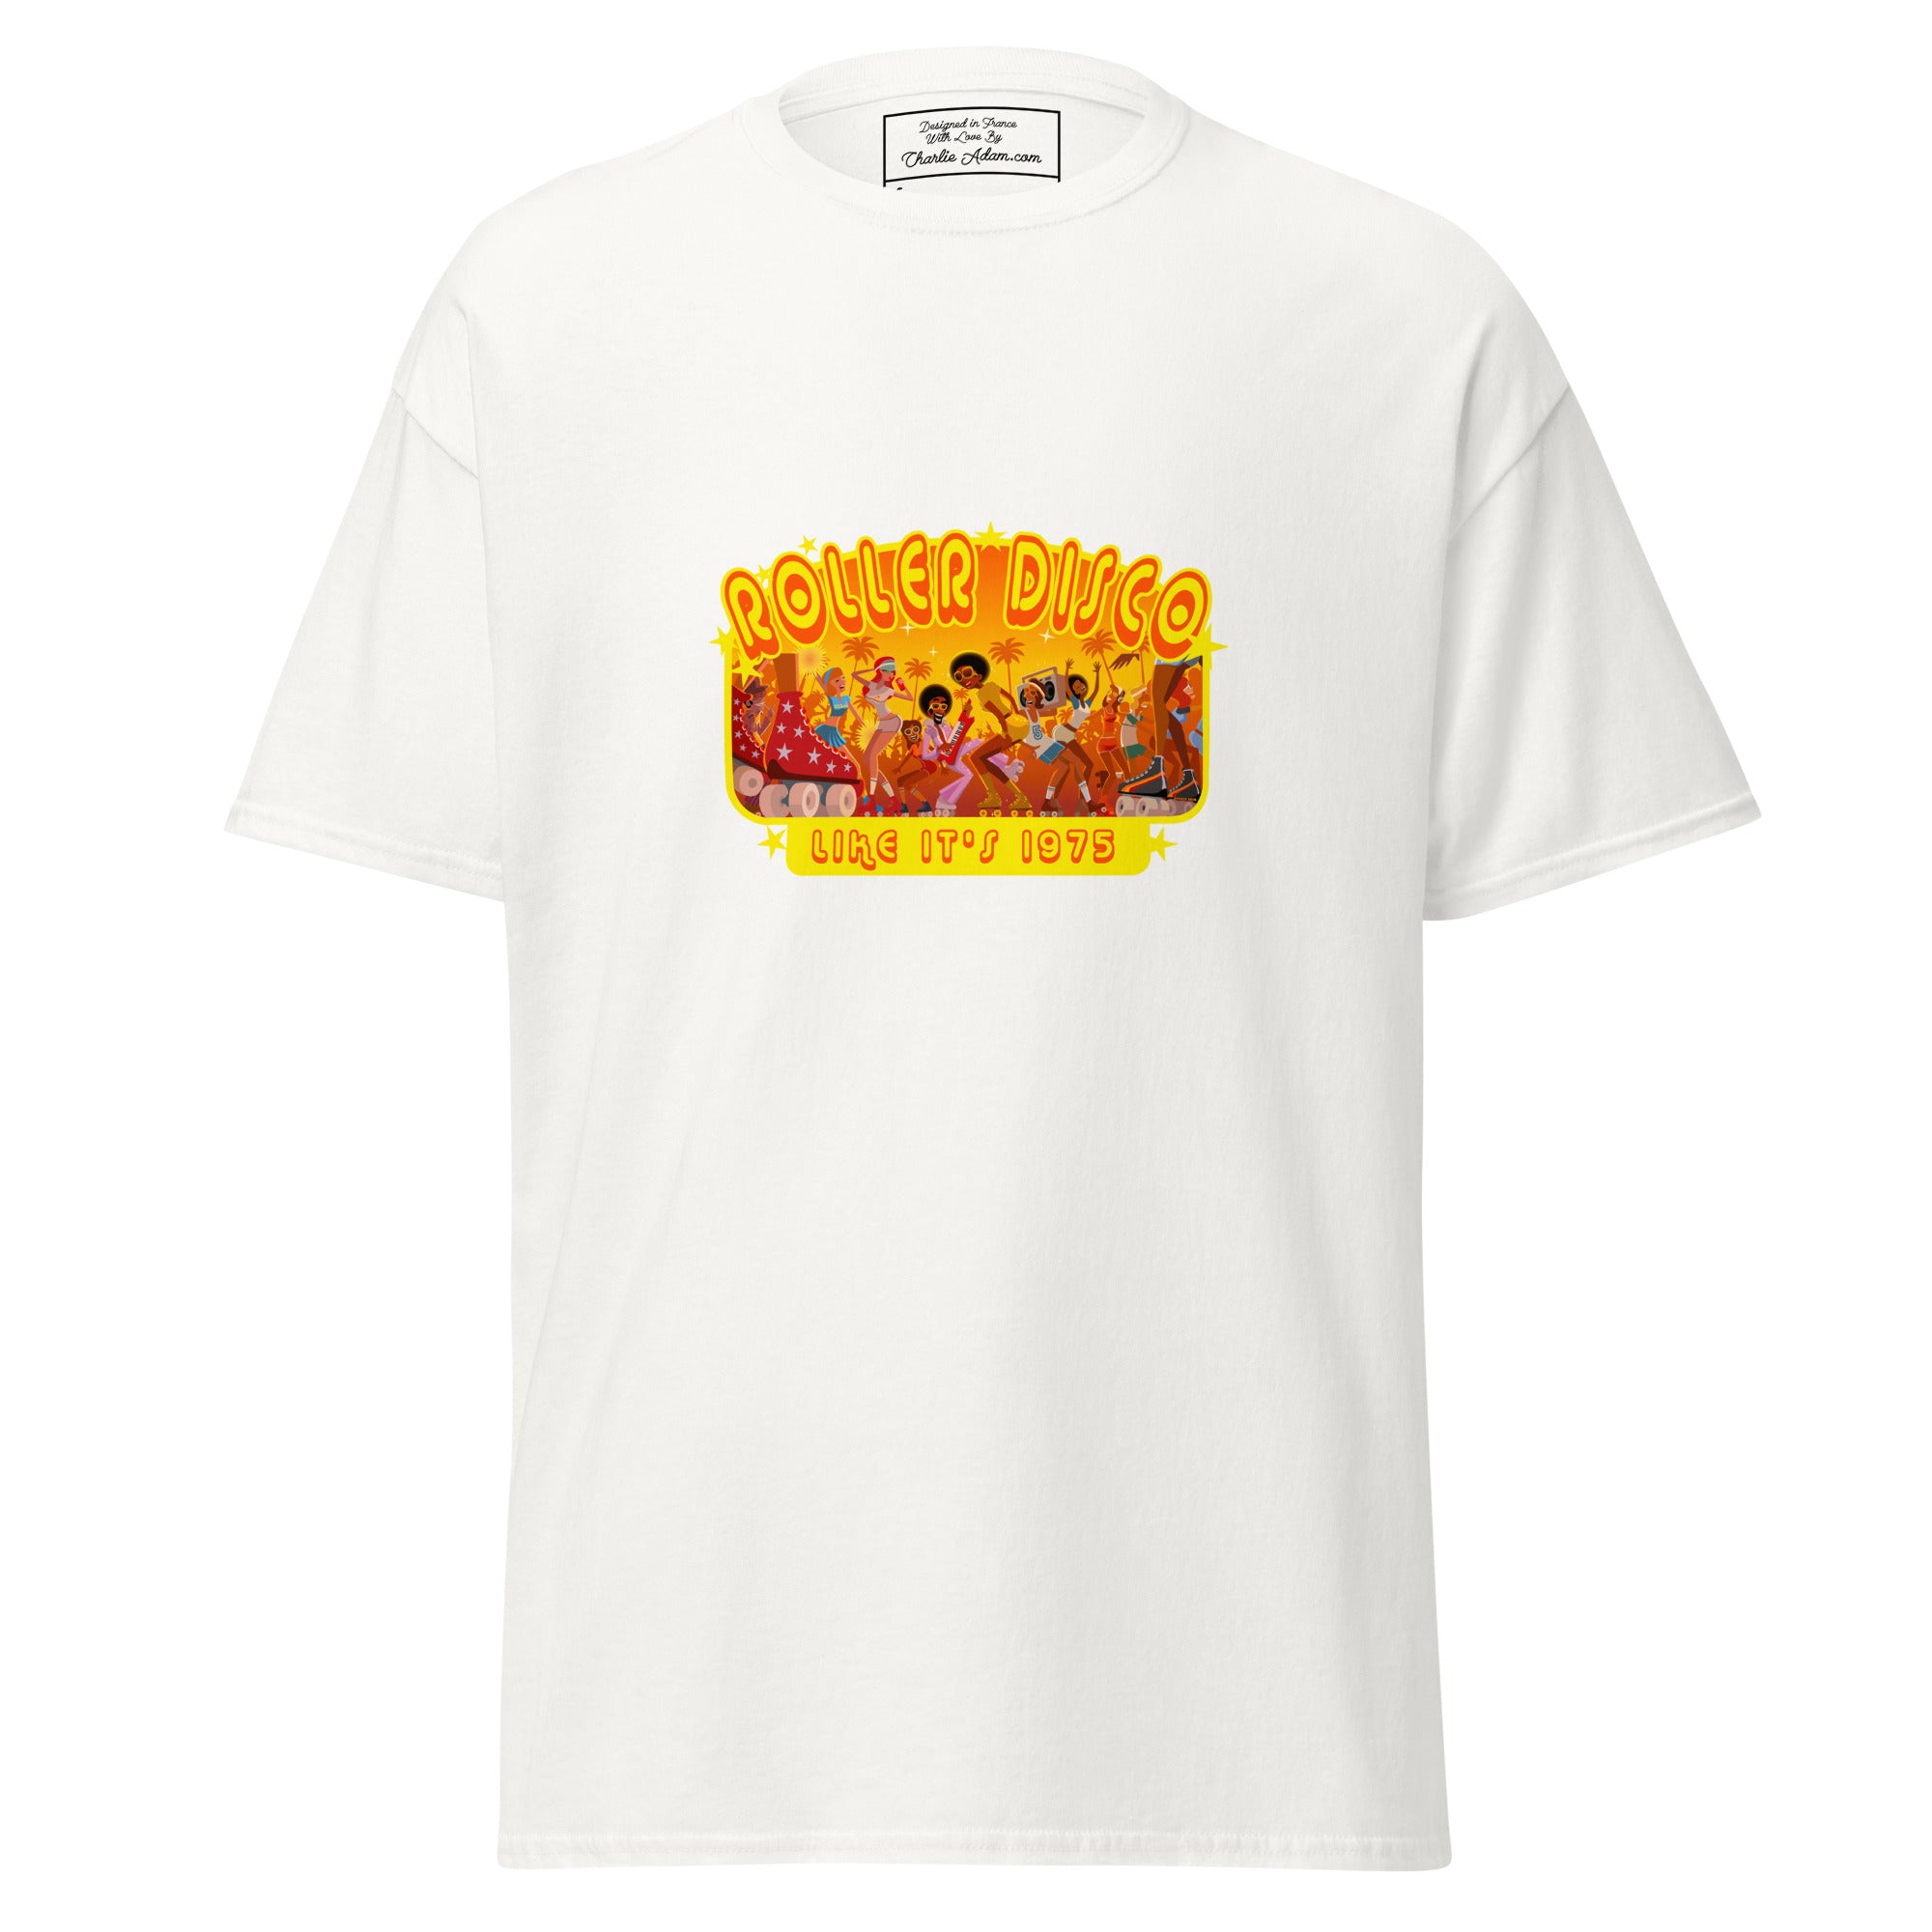 T-shirt classique homme Roller Disco 1975 sur couleurs claires